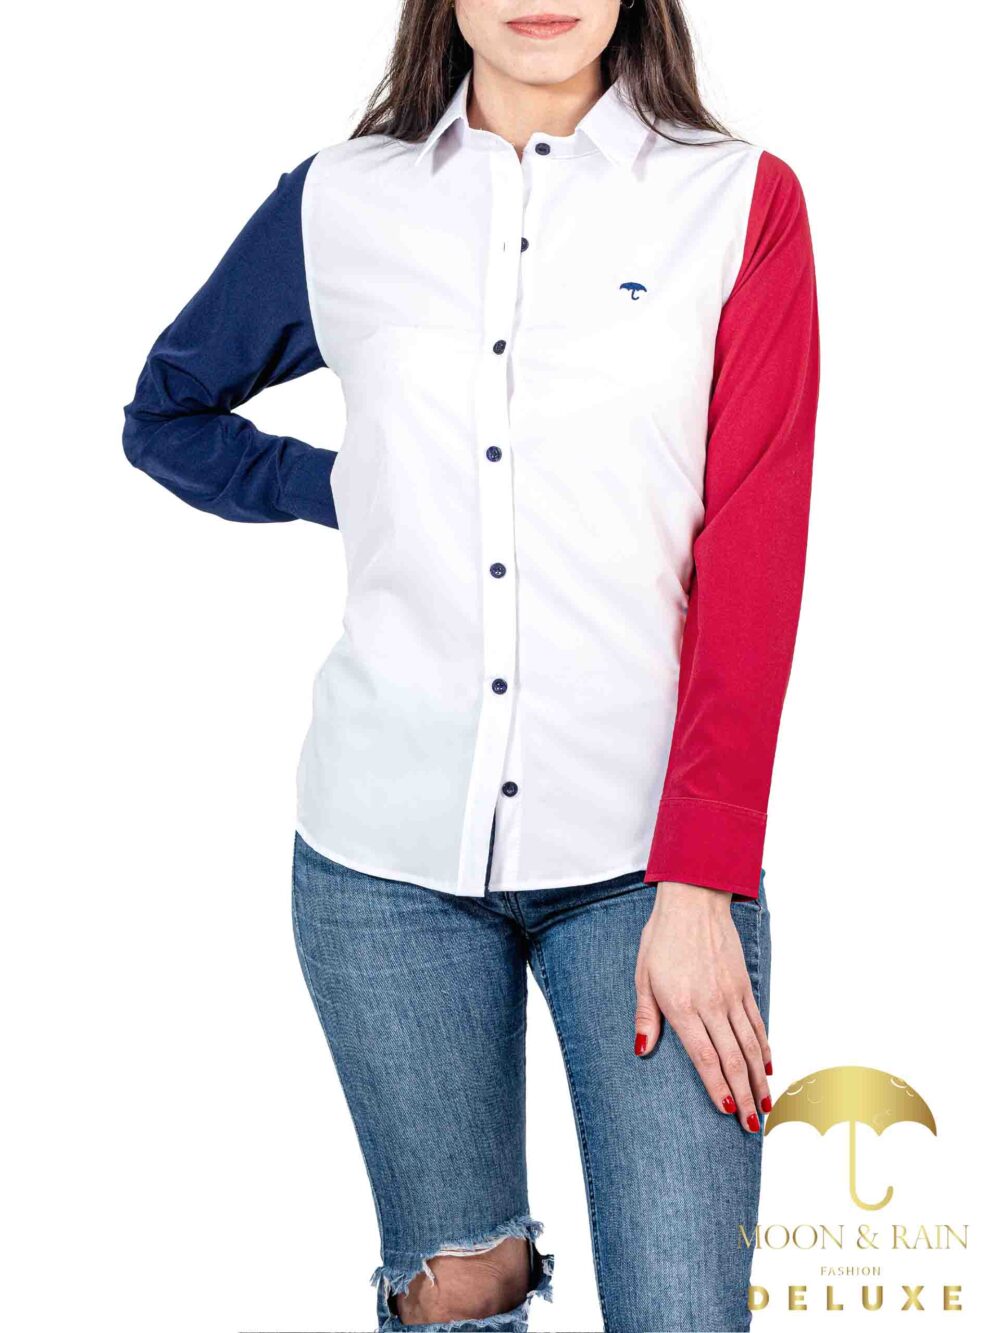 Camisa Blusa Mujer Casual Blanca Mangas Marino, Roja